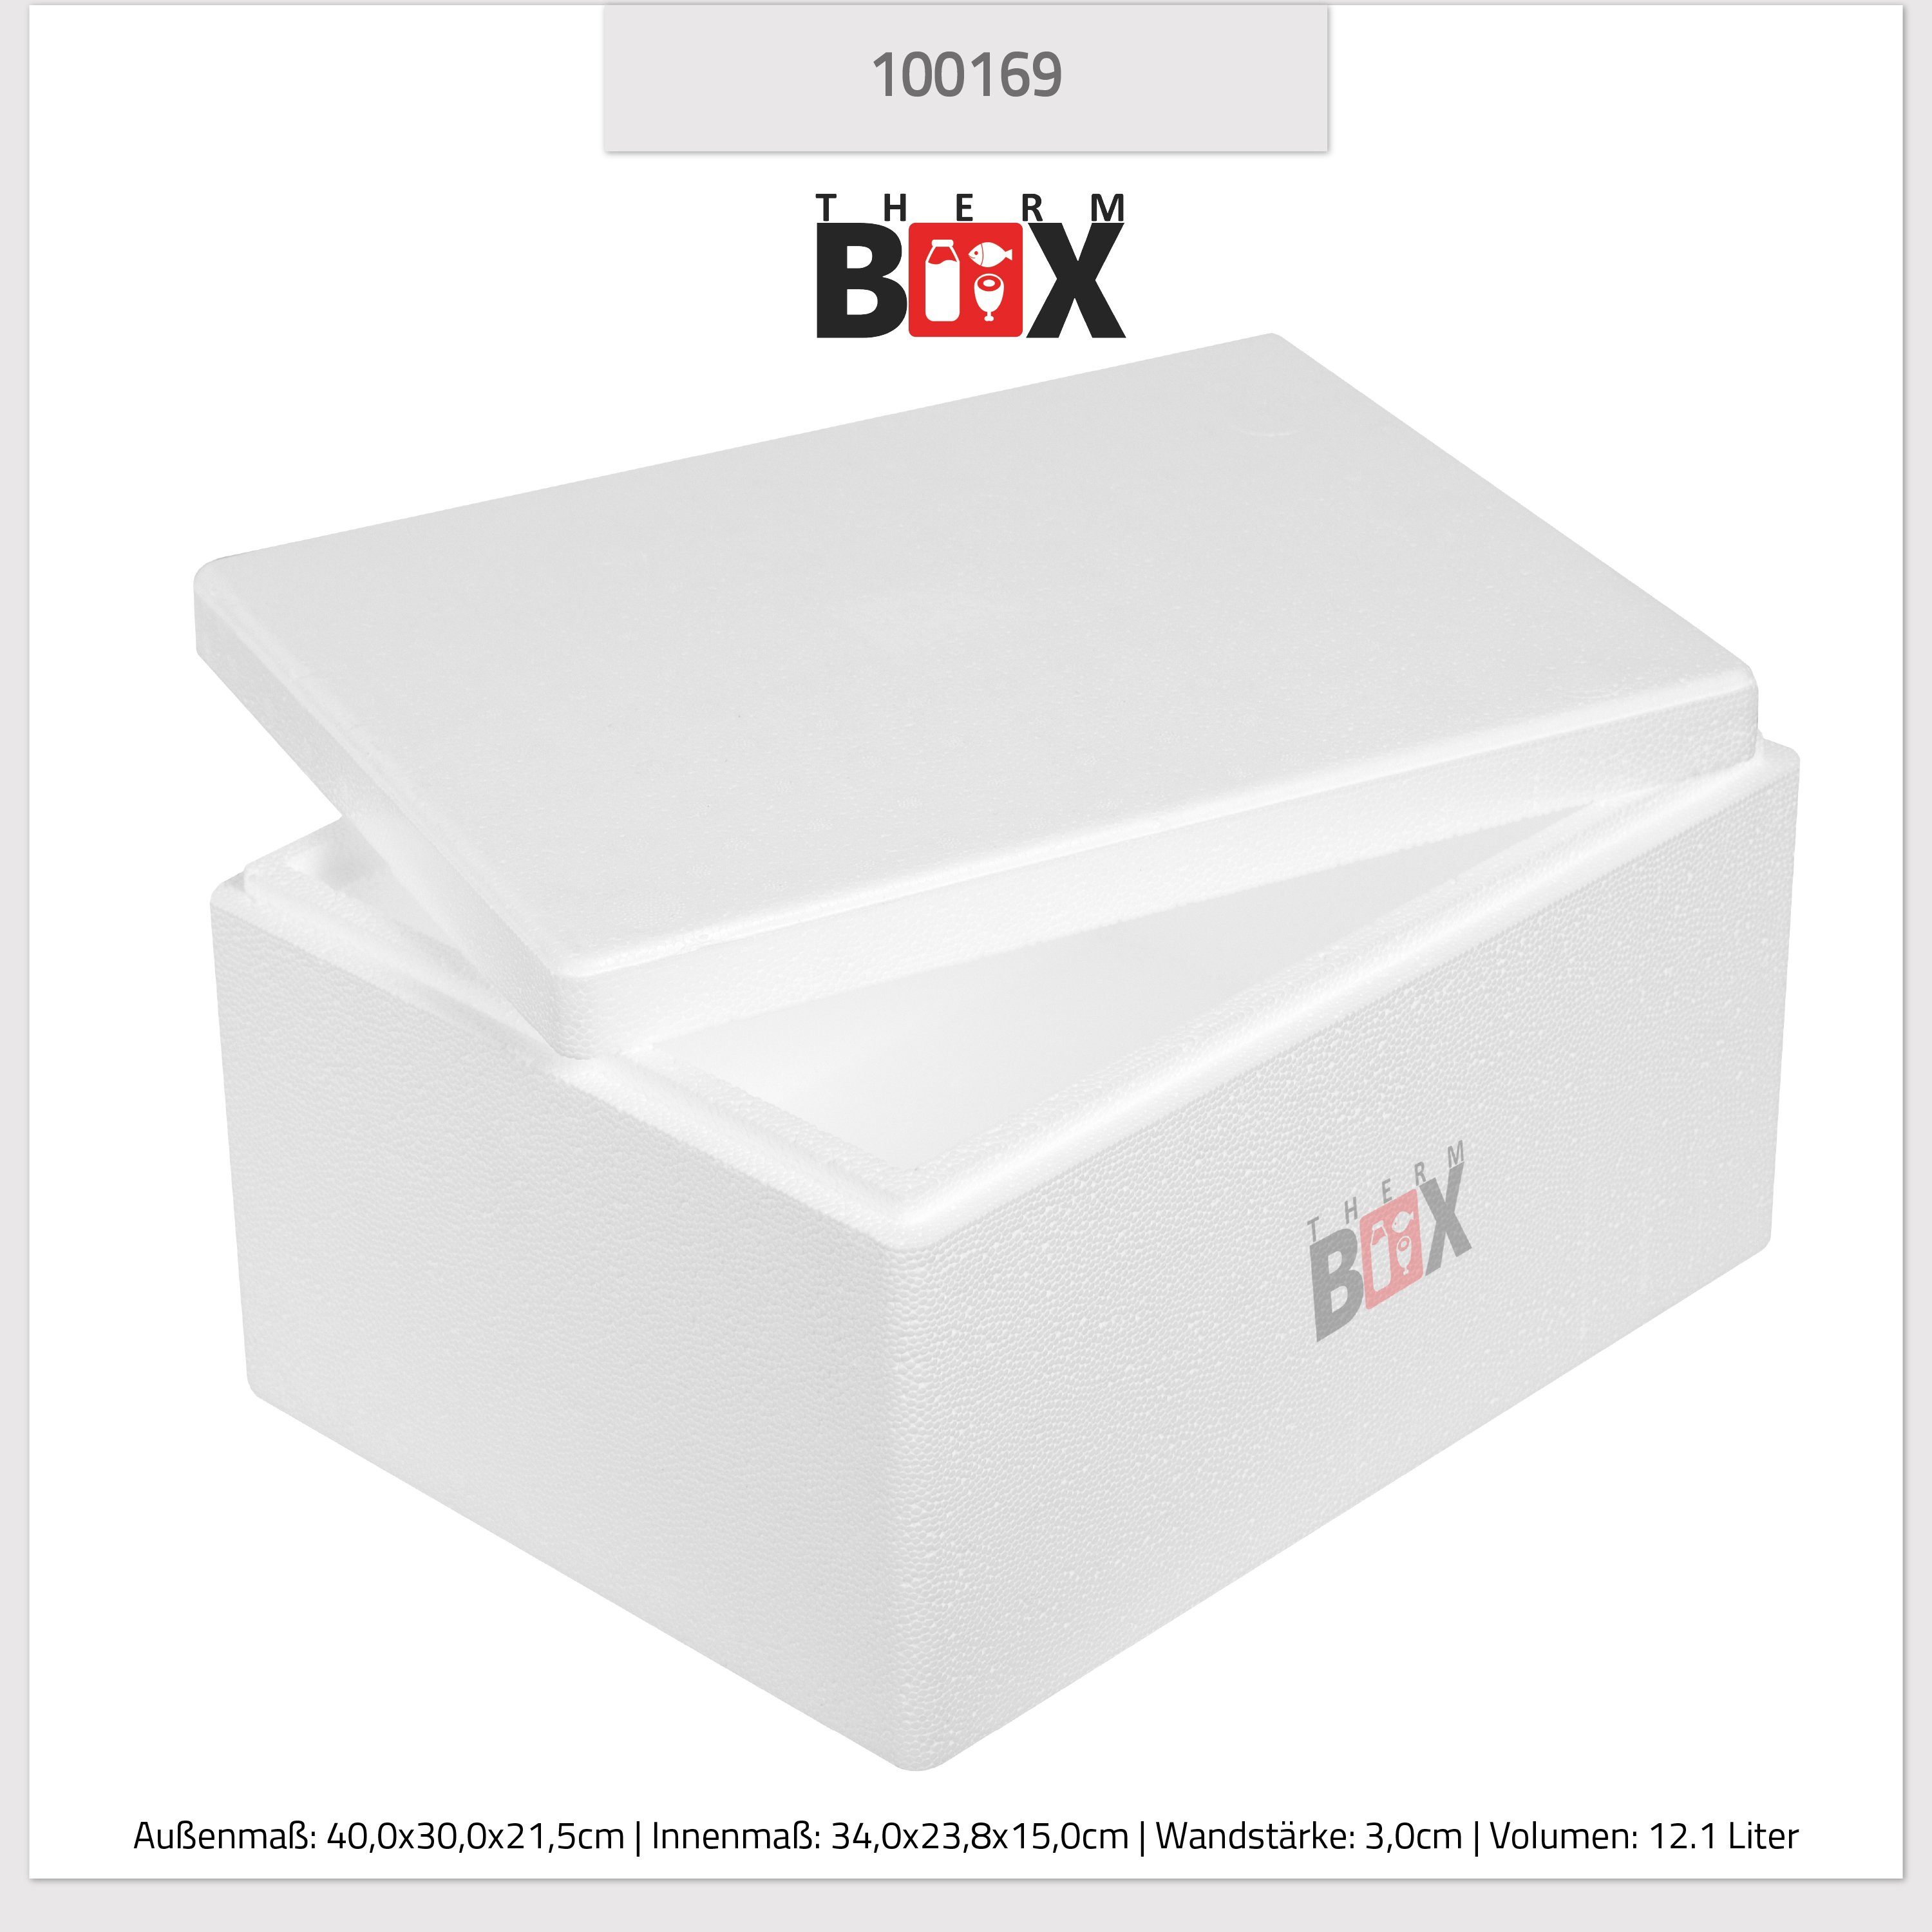 12W Wand: Thermobox Styropor-Verdichtet, (1, 3cm 12,1L Kühlbox THERM-BOX Isolierbox Warmhaltebox mit im 0-tlg., Karton), Wiederverwendbar Innenmaß:34x23x15cm, Box Deckel Thermobehälter Styroporbox